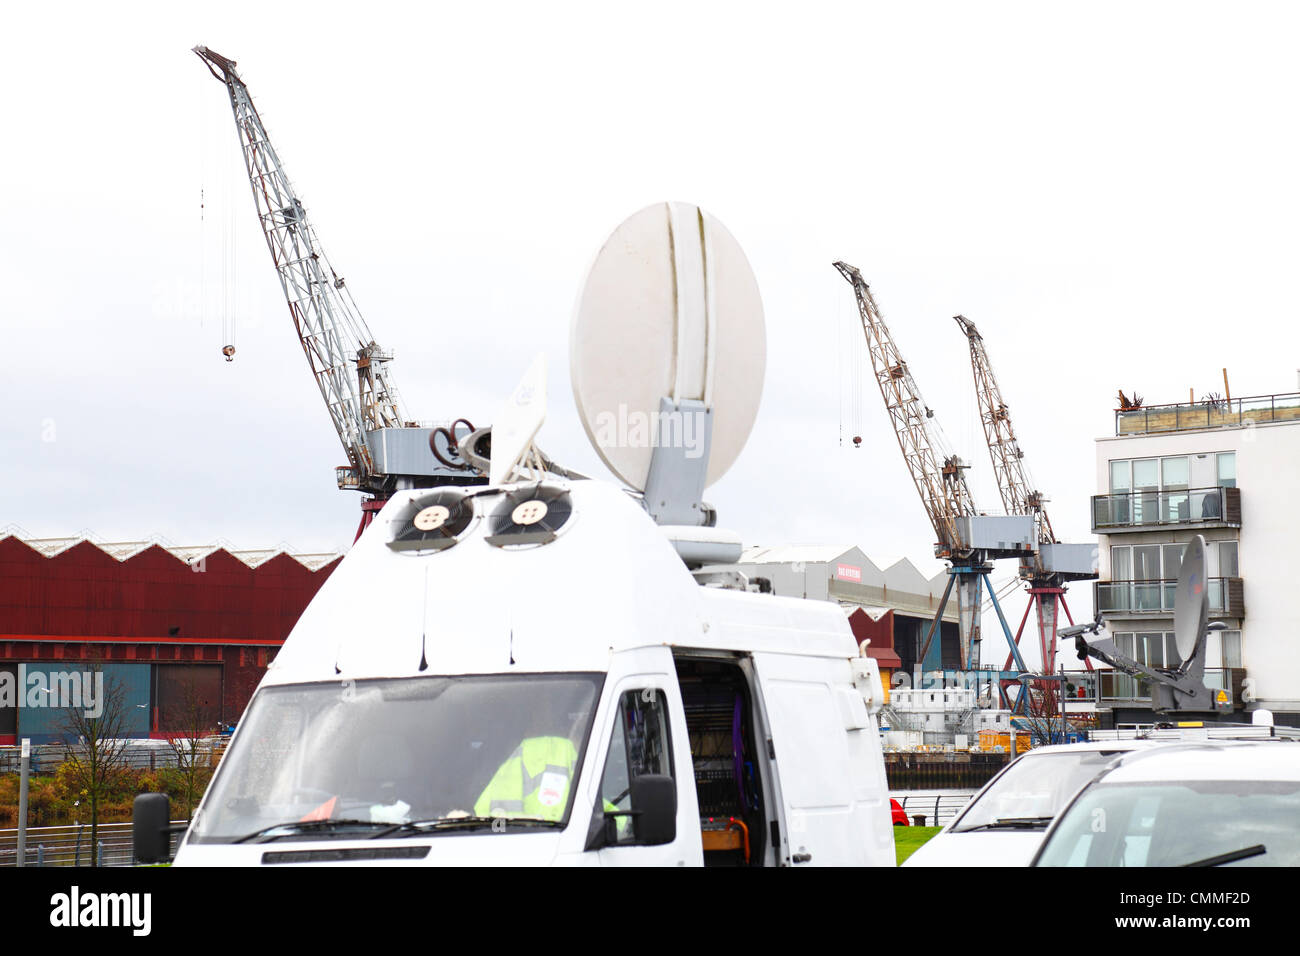 BAE Systems, Govan, Glasgow, Écosse, Royaume-Uni, mercredi 6 novembre 2013. TV Outside Broadcast van devant BAE Systems Shipyard sur la rivière Clyde le jour où les suppressions d'emplois ont été annoncées. Banque D'Images